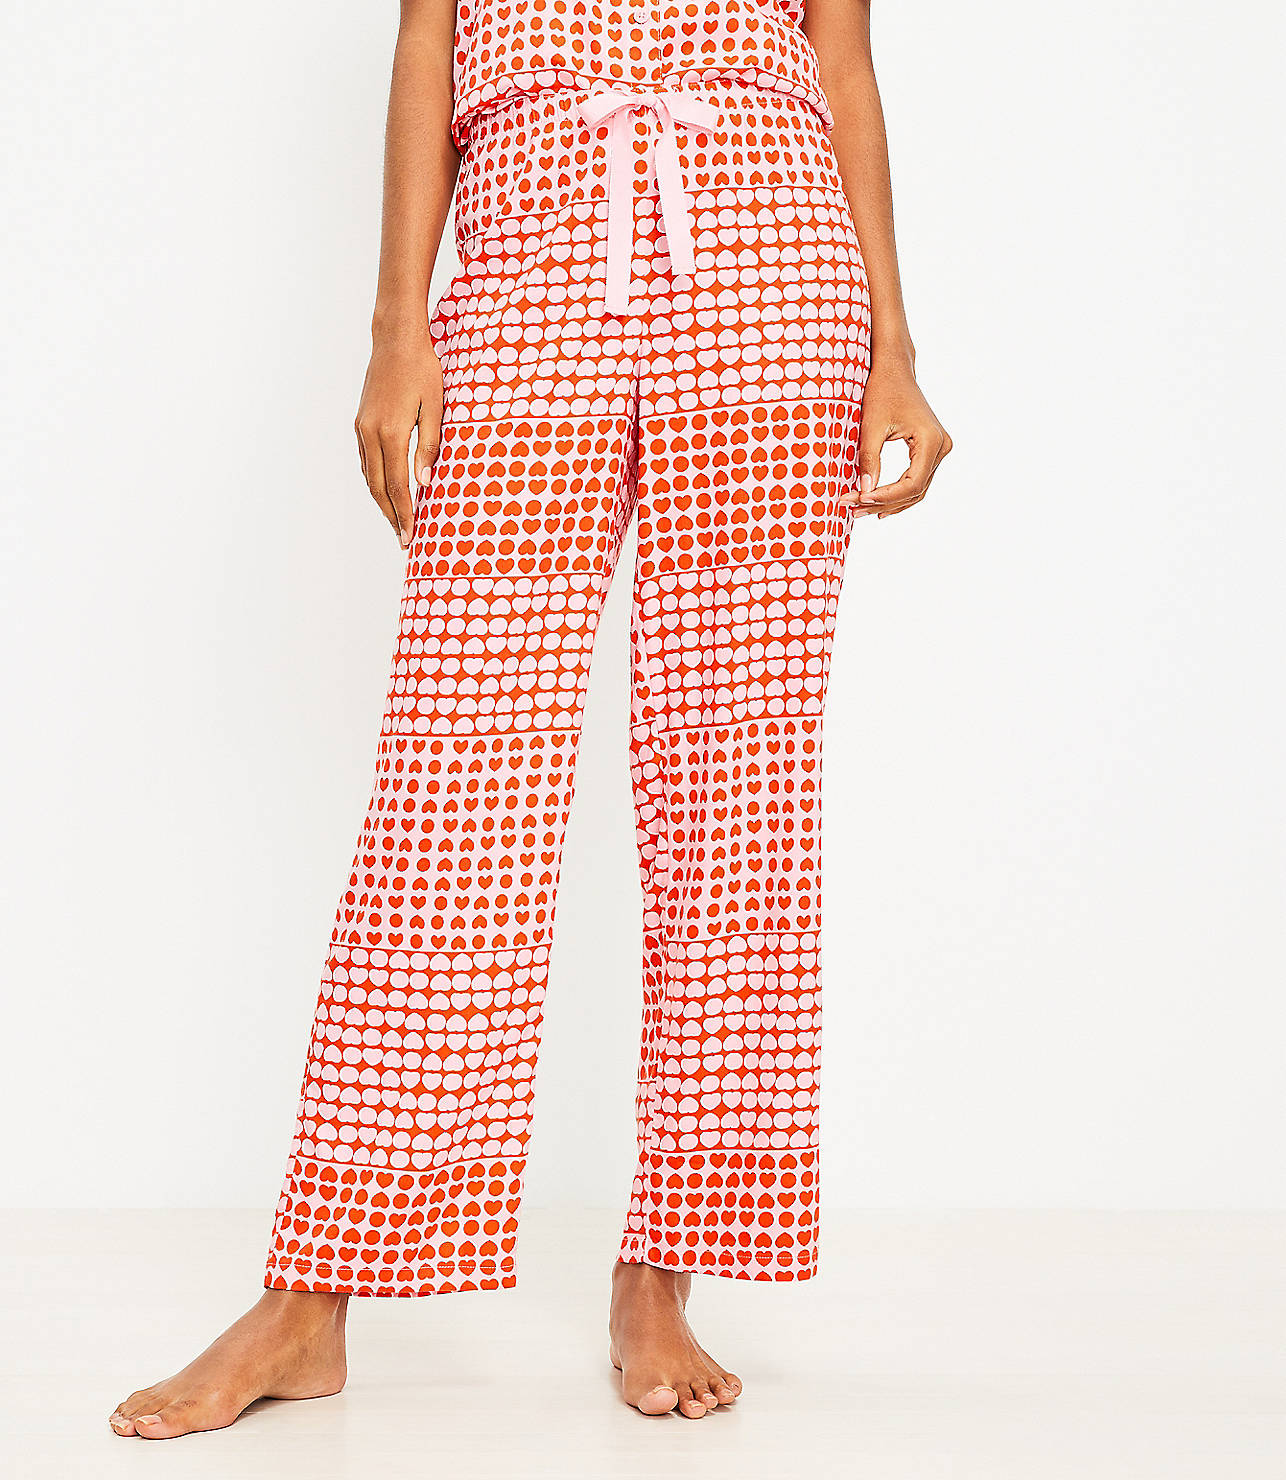 Heart Pajama Pants